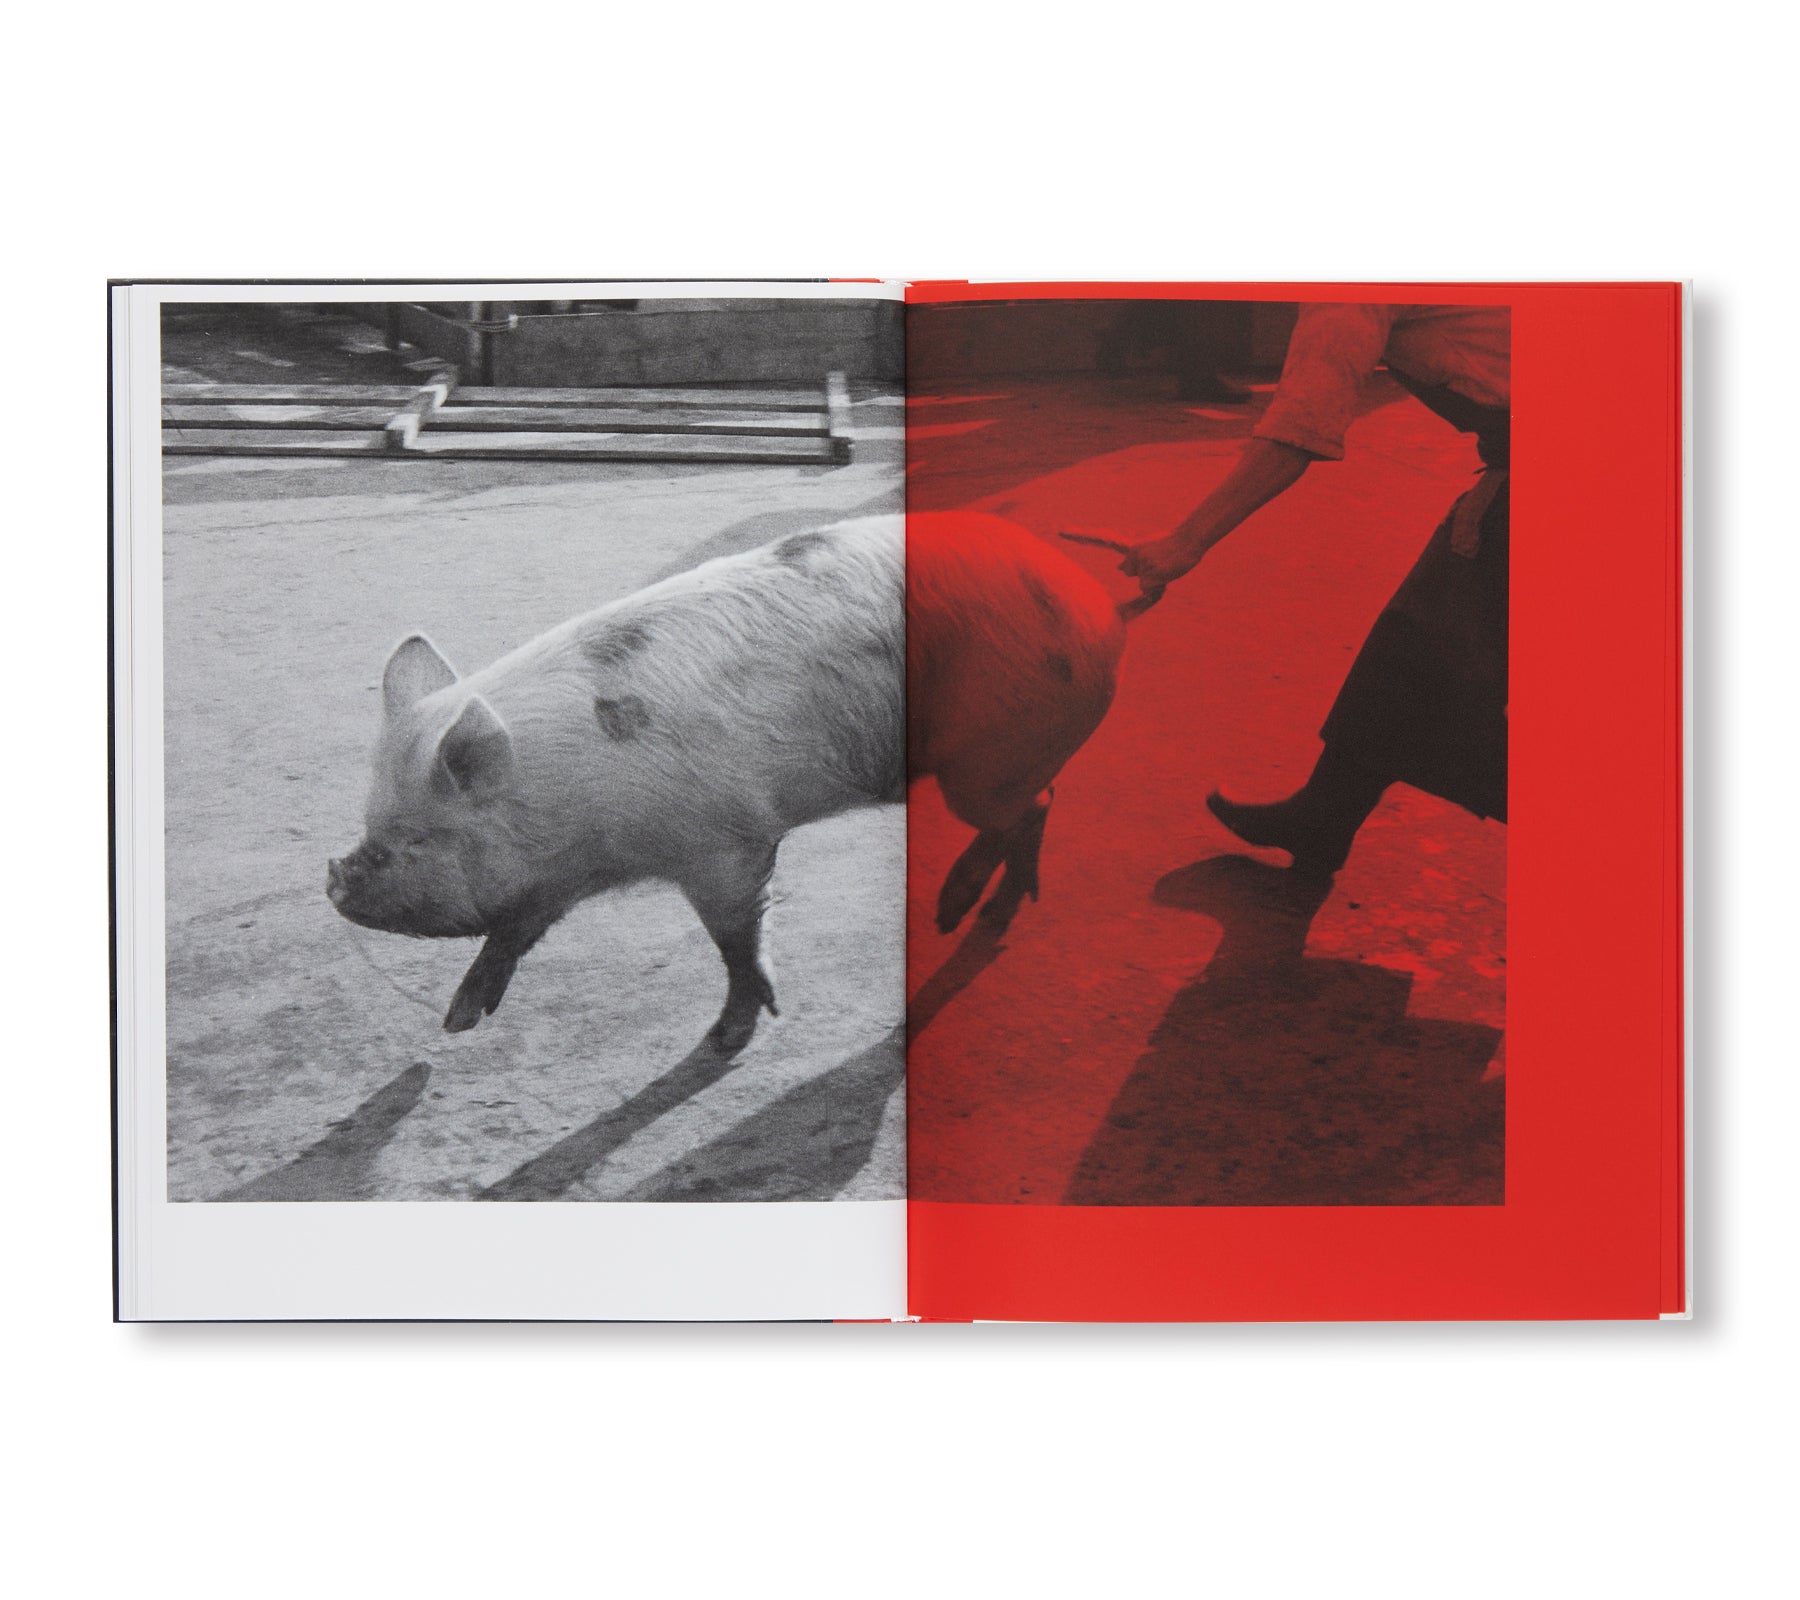 KILL THE PIG by Masahisa Fukase